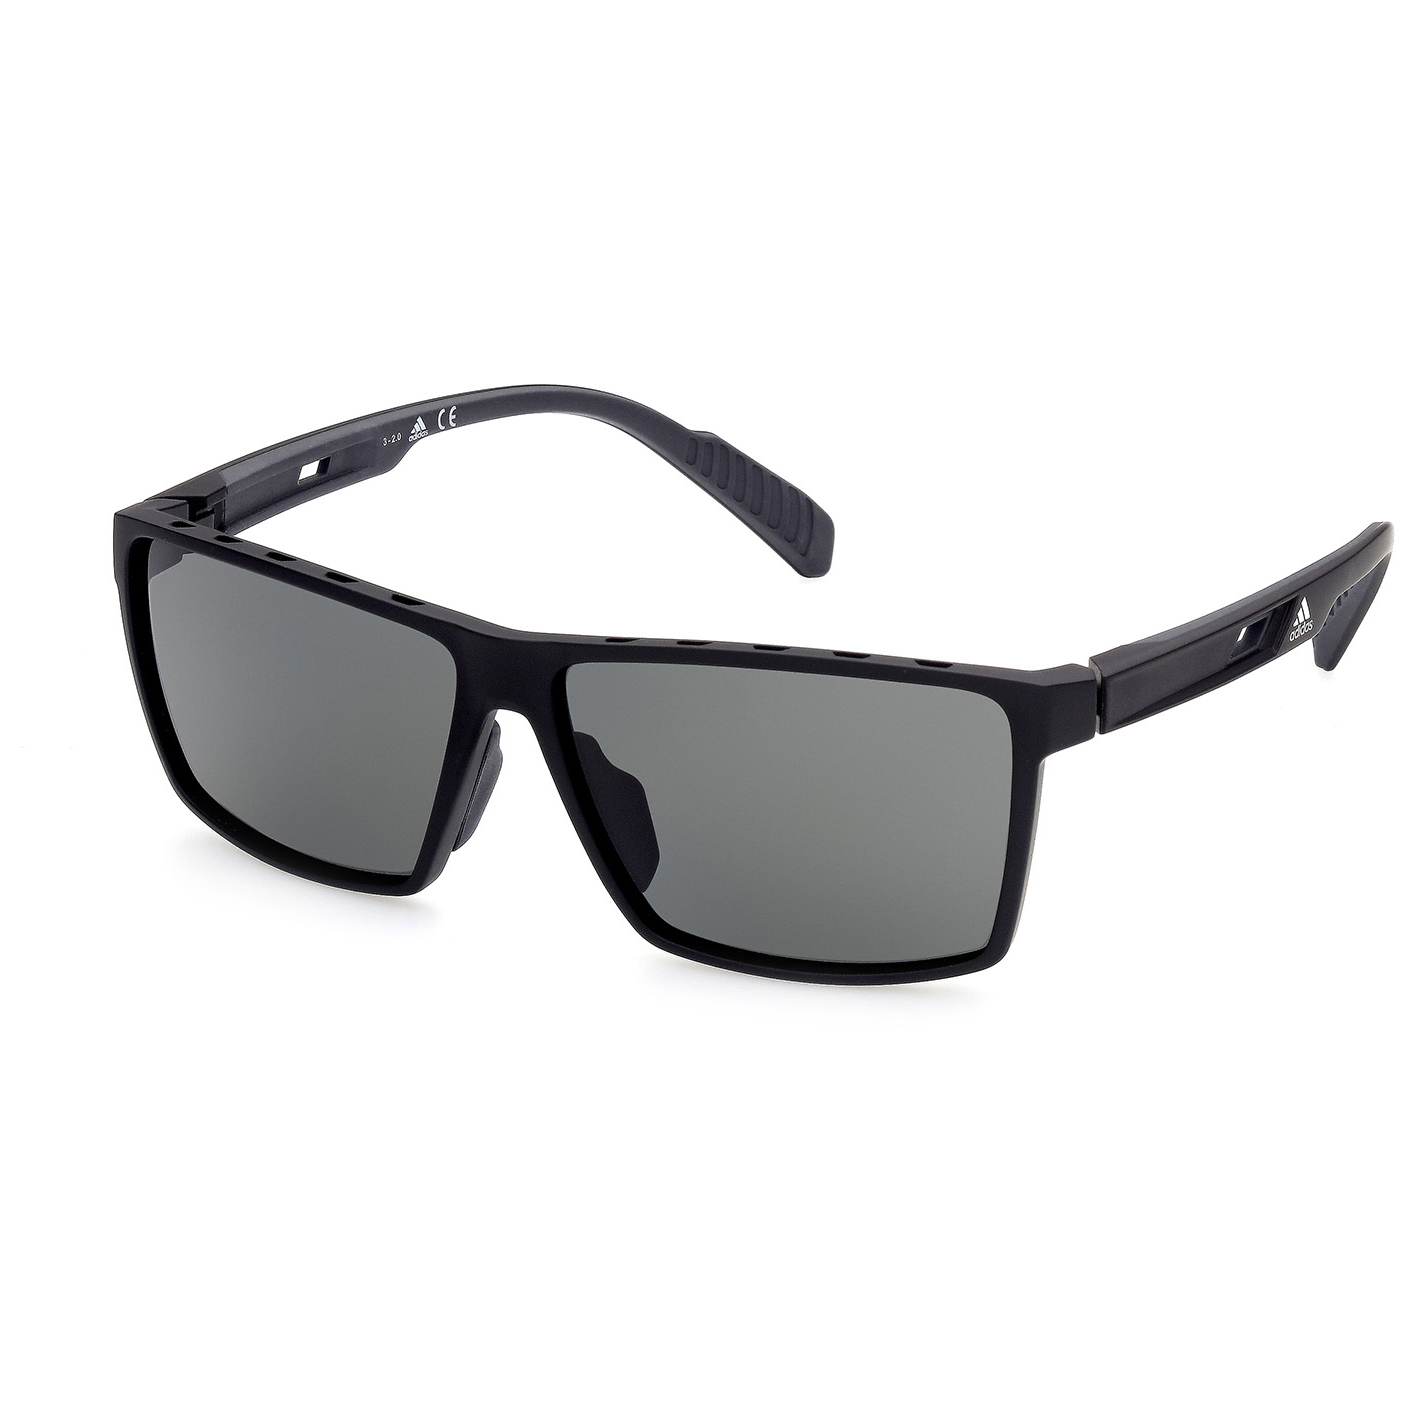 Солнцезащитные очки Adidas SP0034 Polarized Cat 3, матовый черный очки солнцезащитные stylemark polarized l1454a